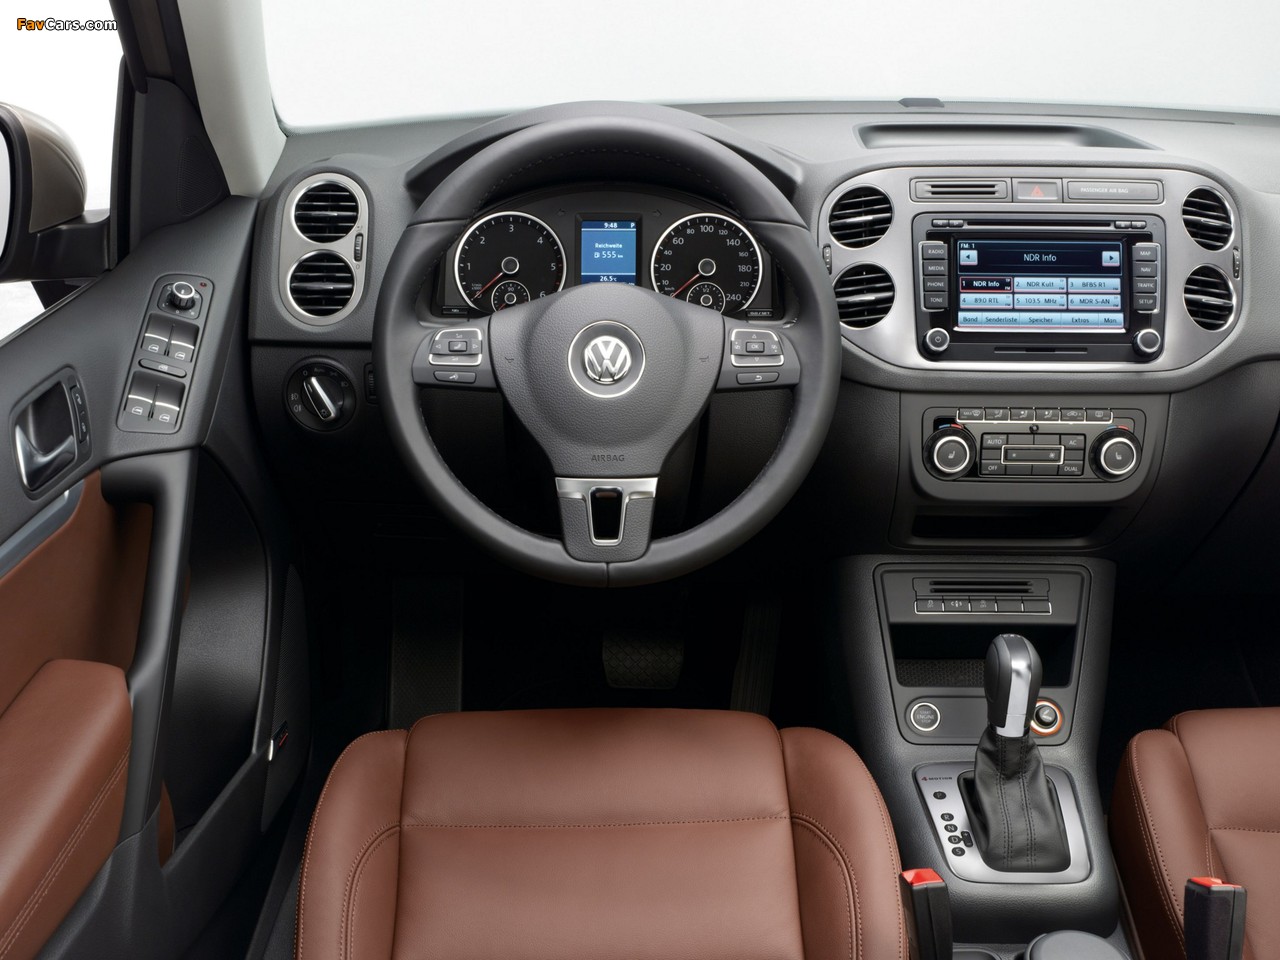 Volkswagen Tiguan Sport & Style 2011 pictures (1280 x 960)